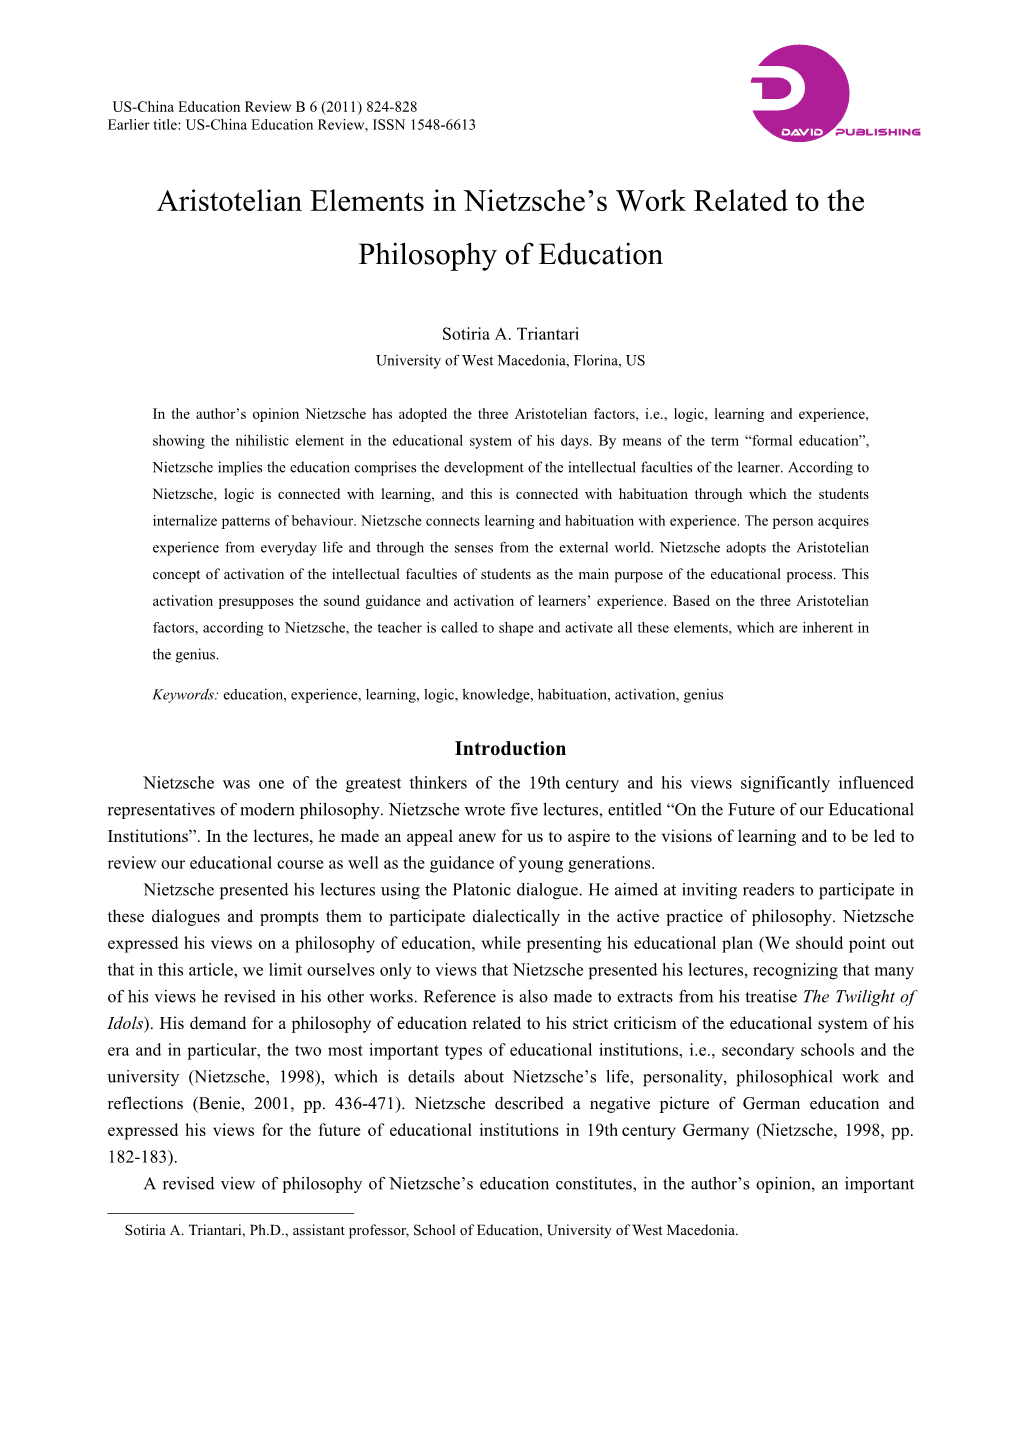 Aristotelian Elements in Nietzsche's Work Related to the Philosophy Of